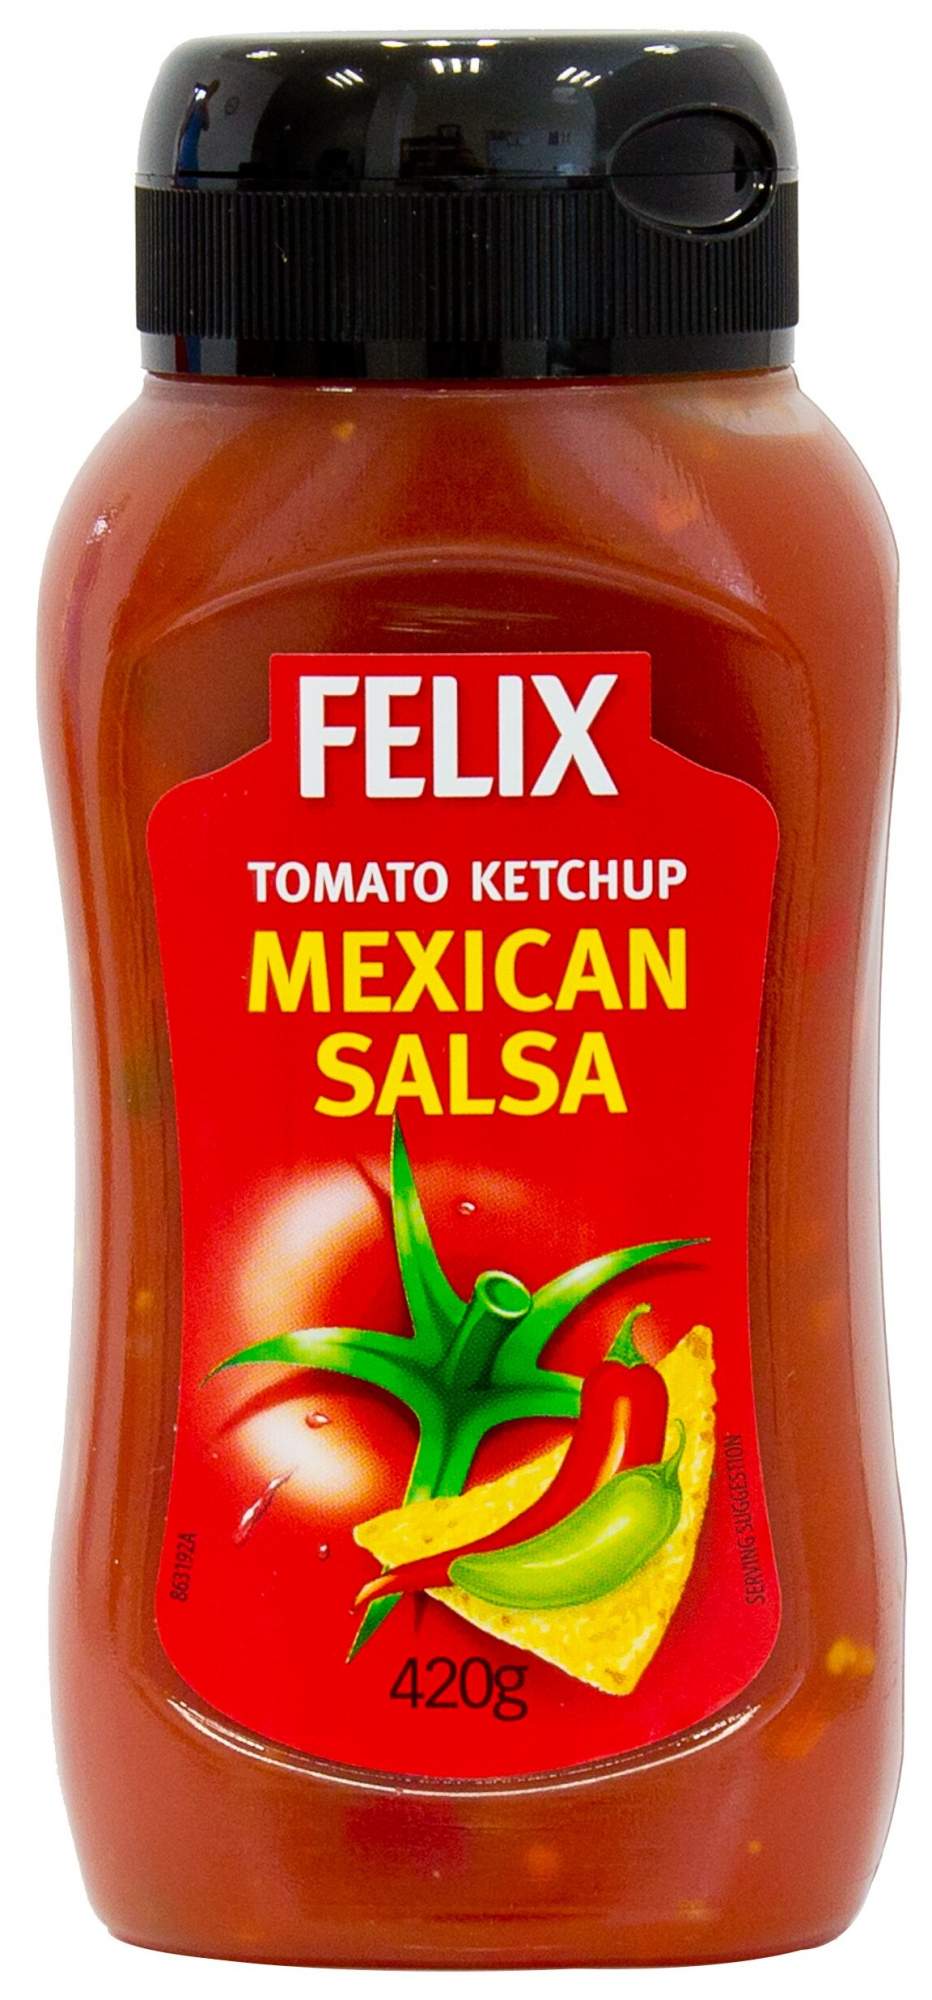 Кетчуп Felix Mexican Salsa томатный 420 г